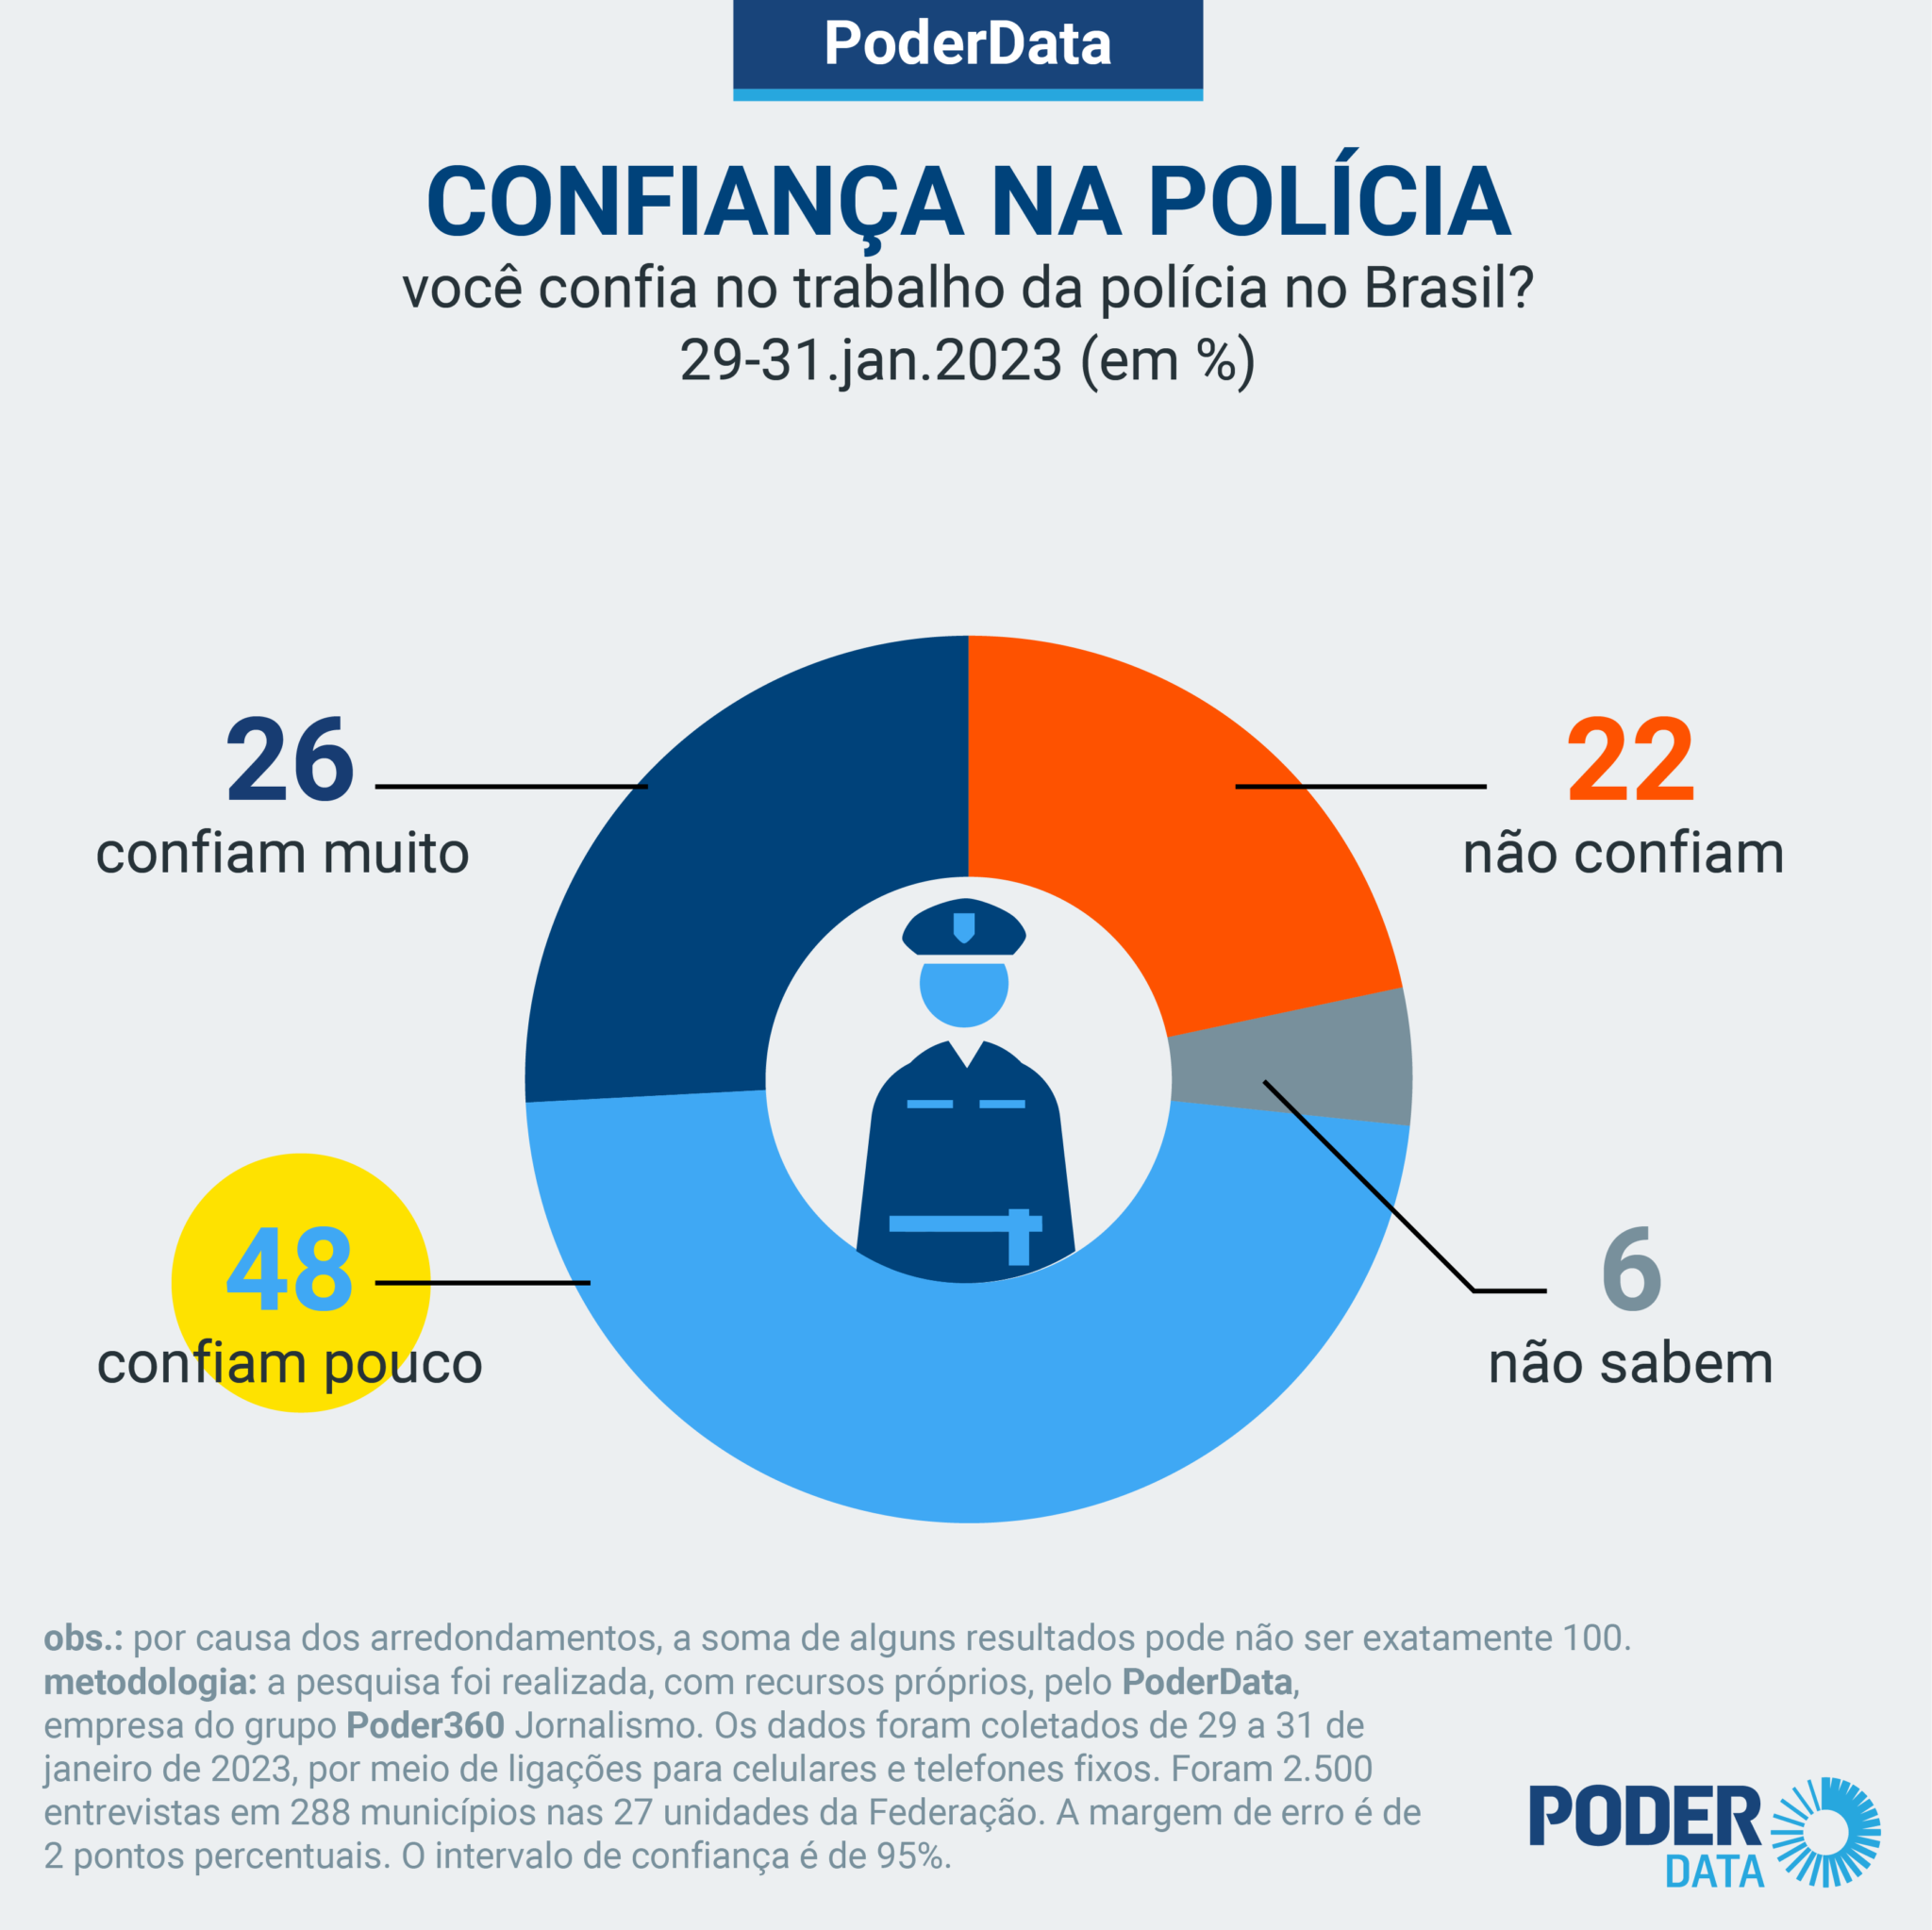 gráfico sobre confinança na polícia no Brasil